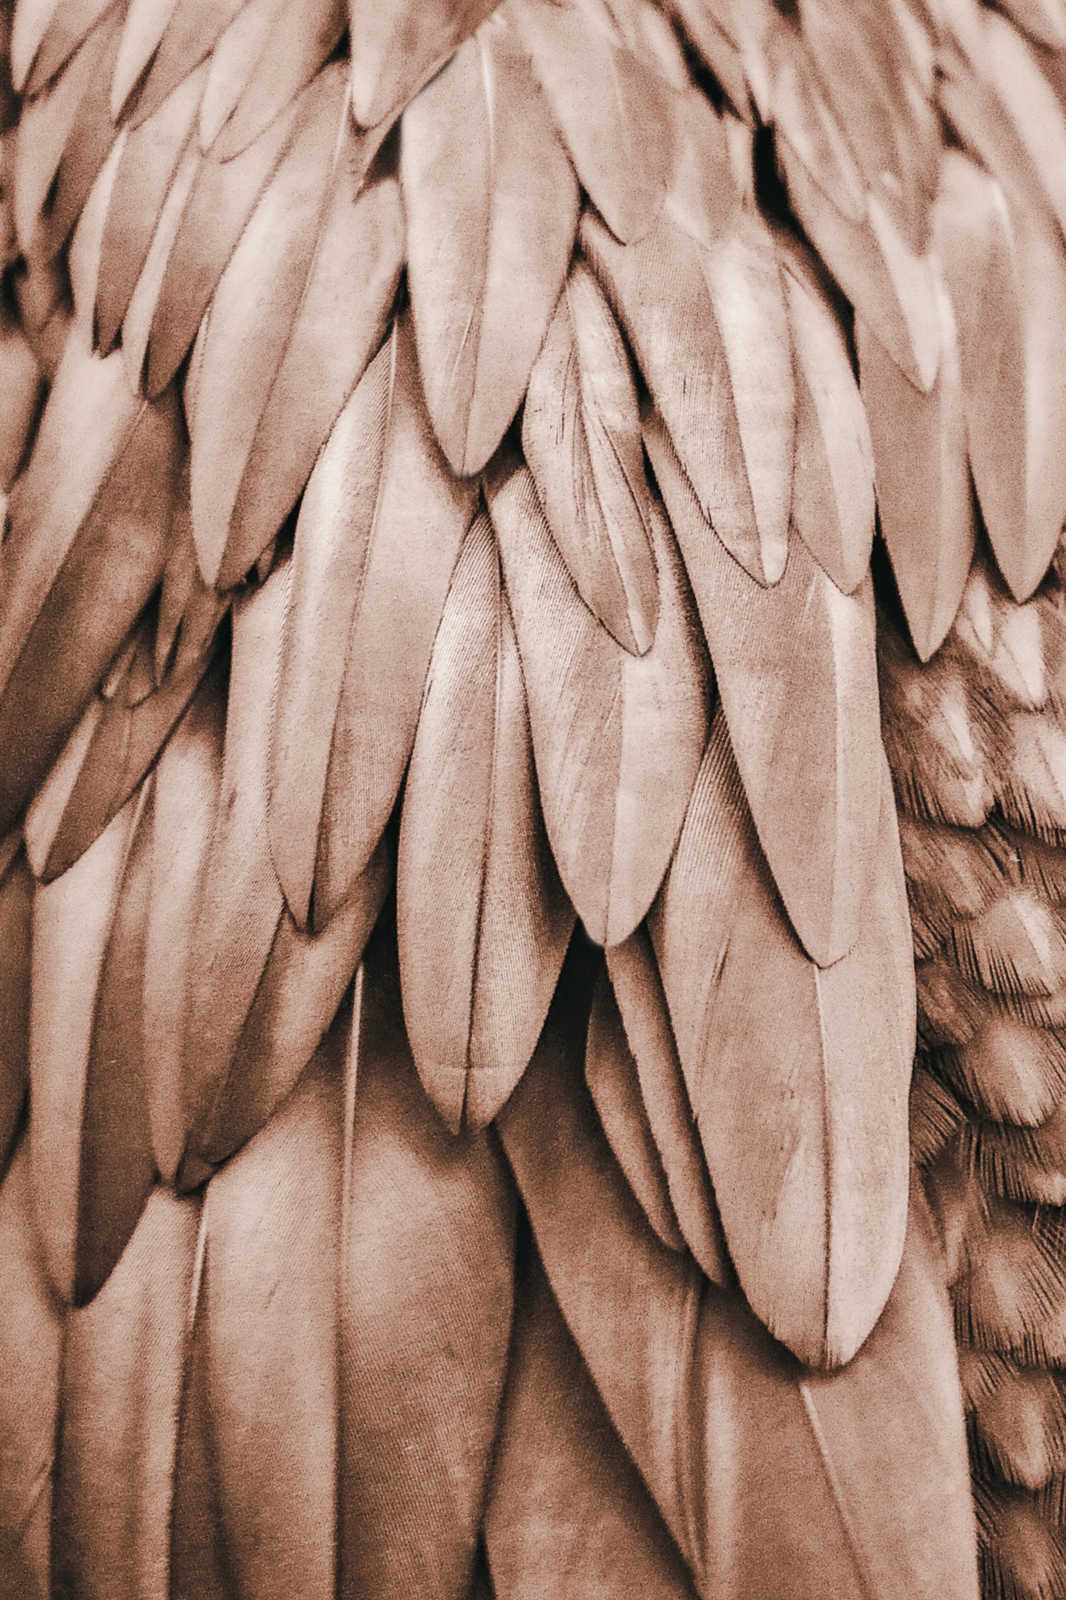             Leinwandbild Feder Flügel in Sepia Braun – 0,90 m x 0,60 m
        